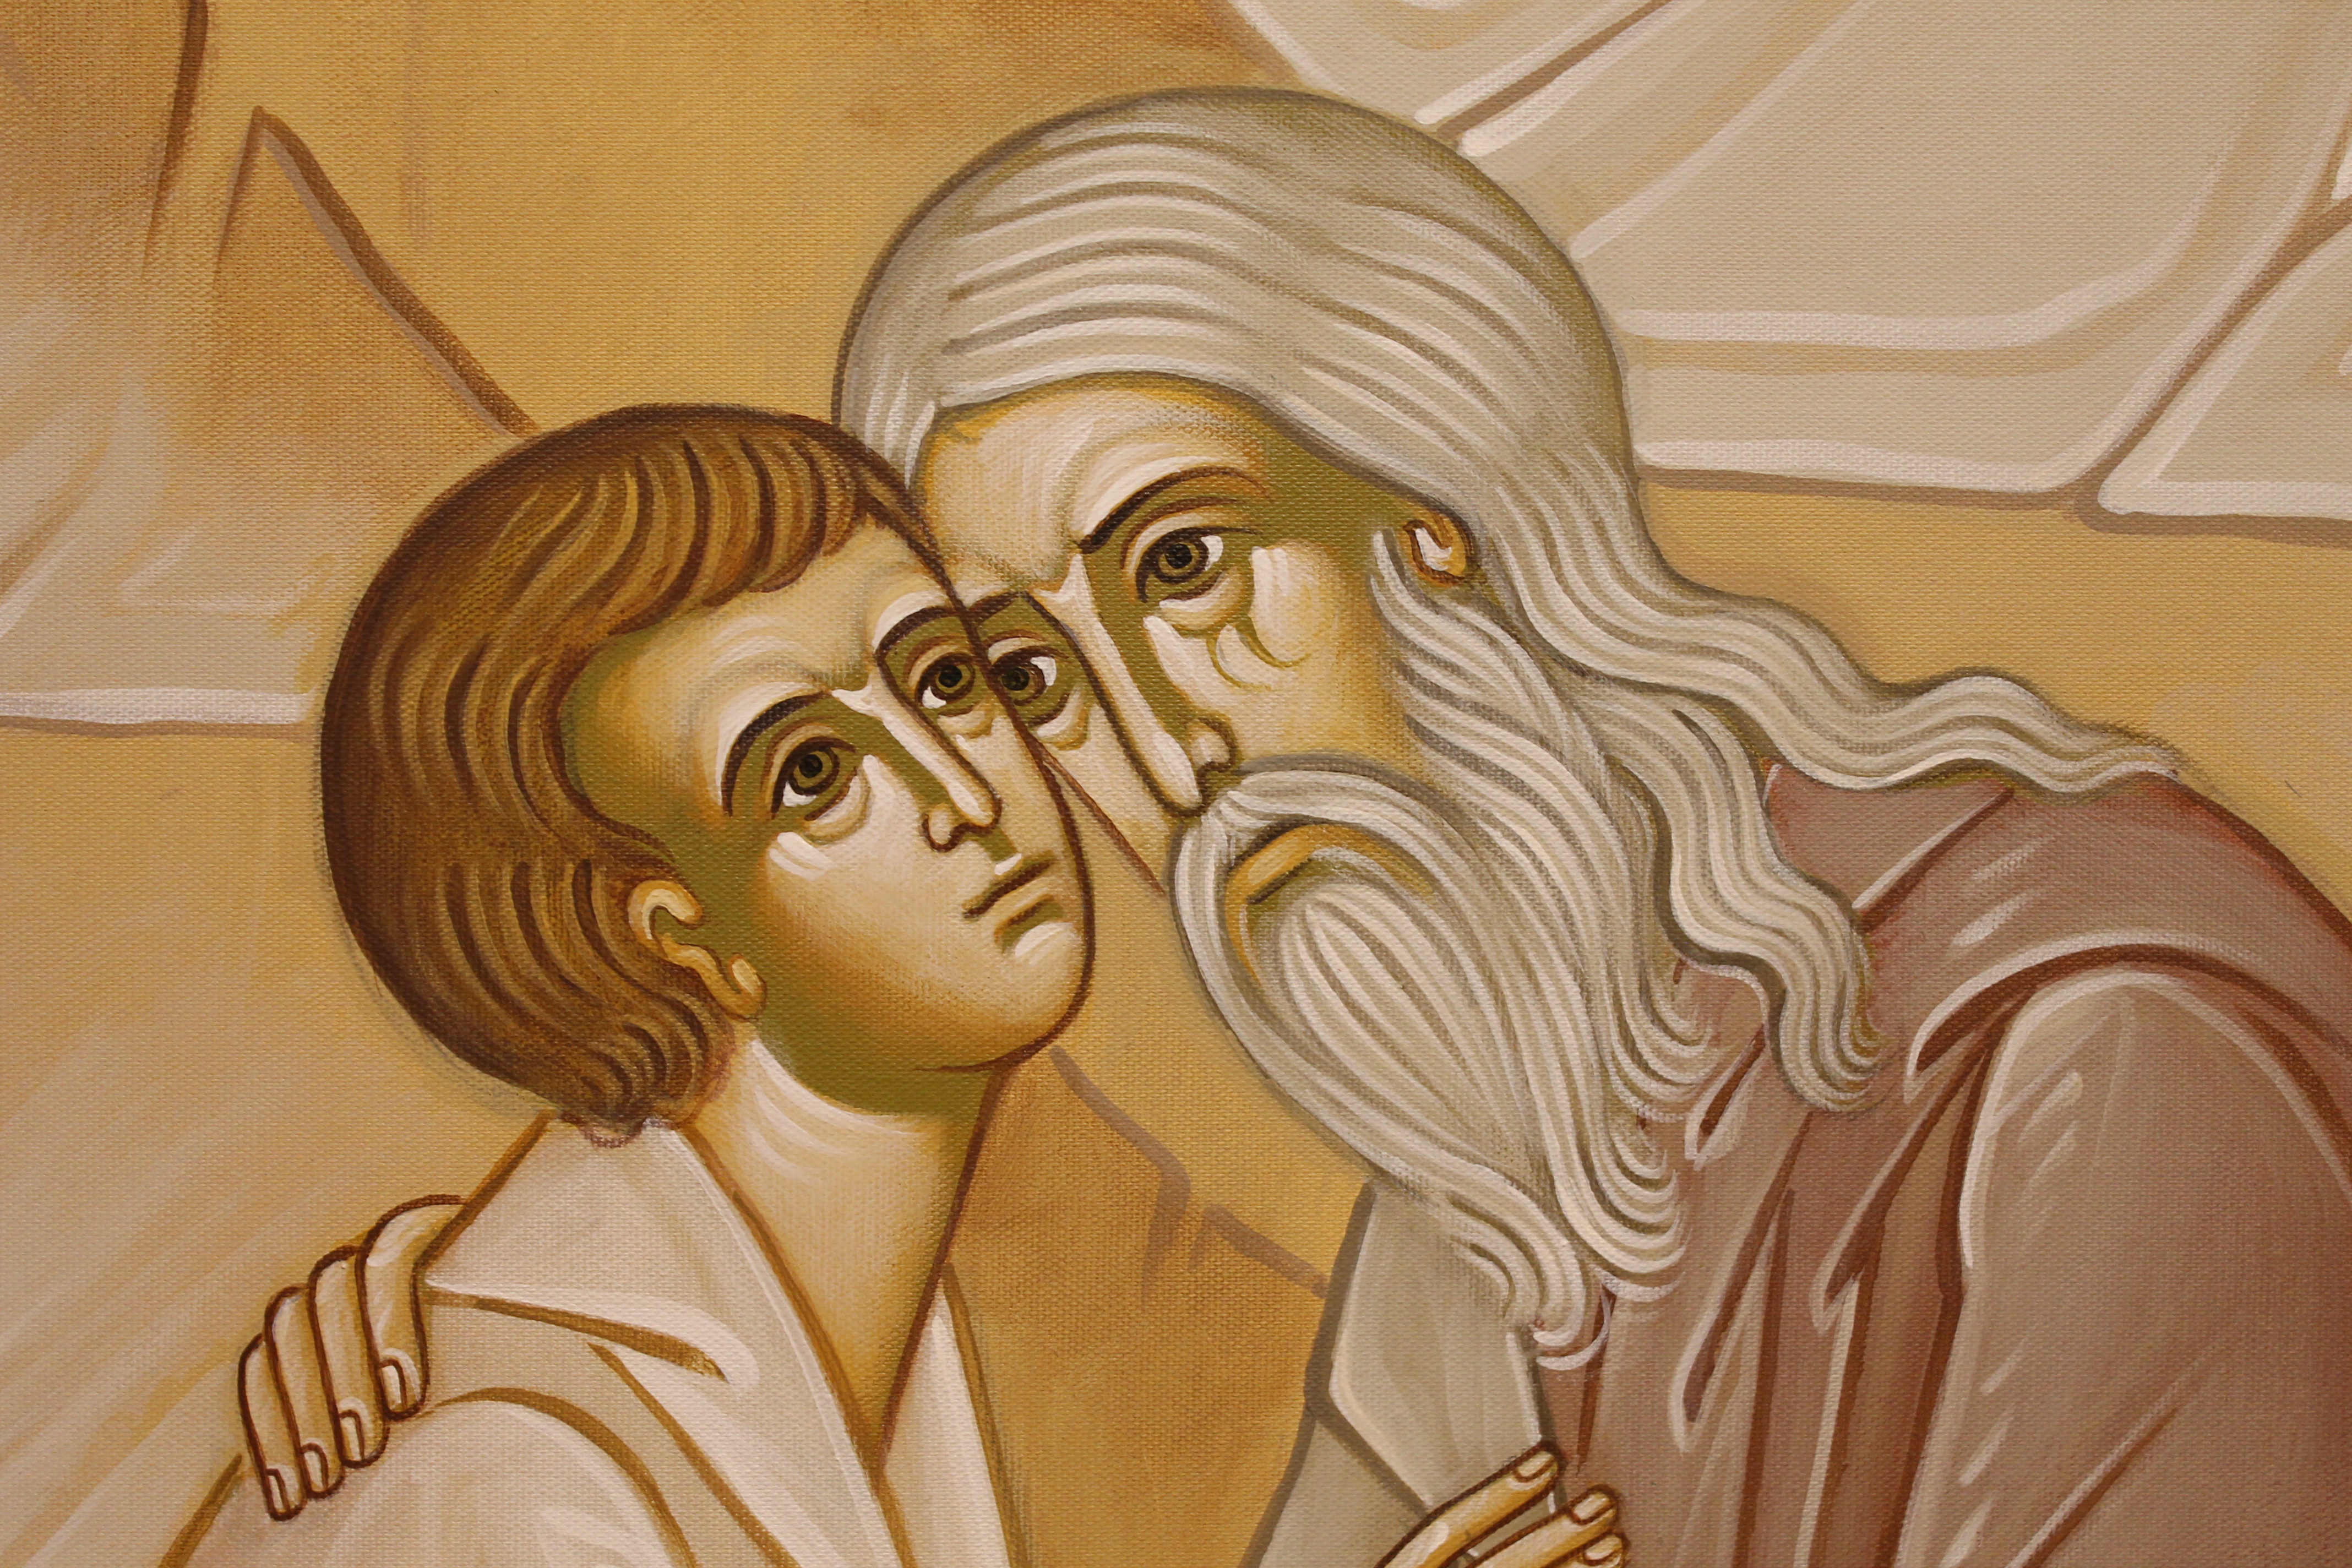 The Prodigal son fragment - St. Nicholas Orthodox Church Salem MA by Anna Gouriev-Pokrovsky